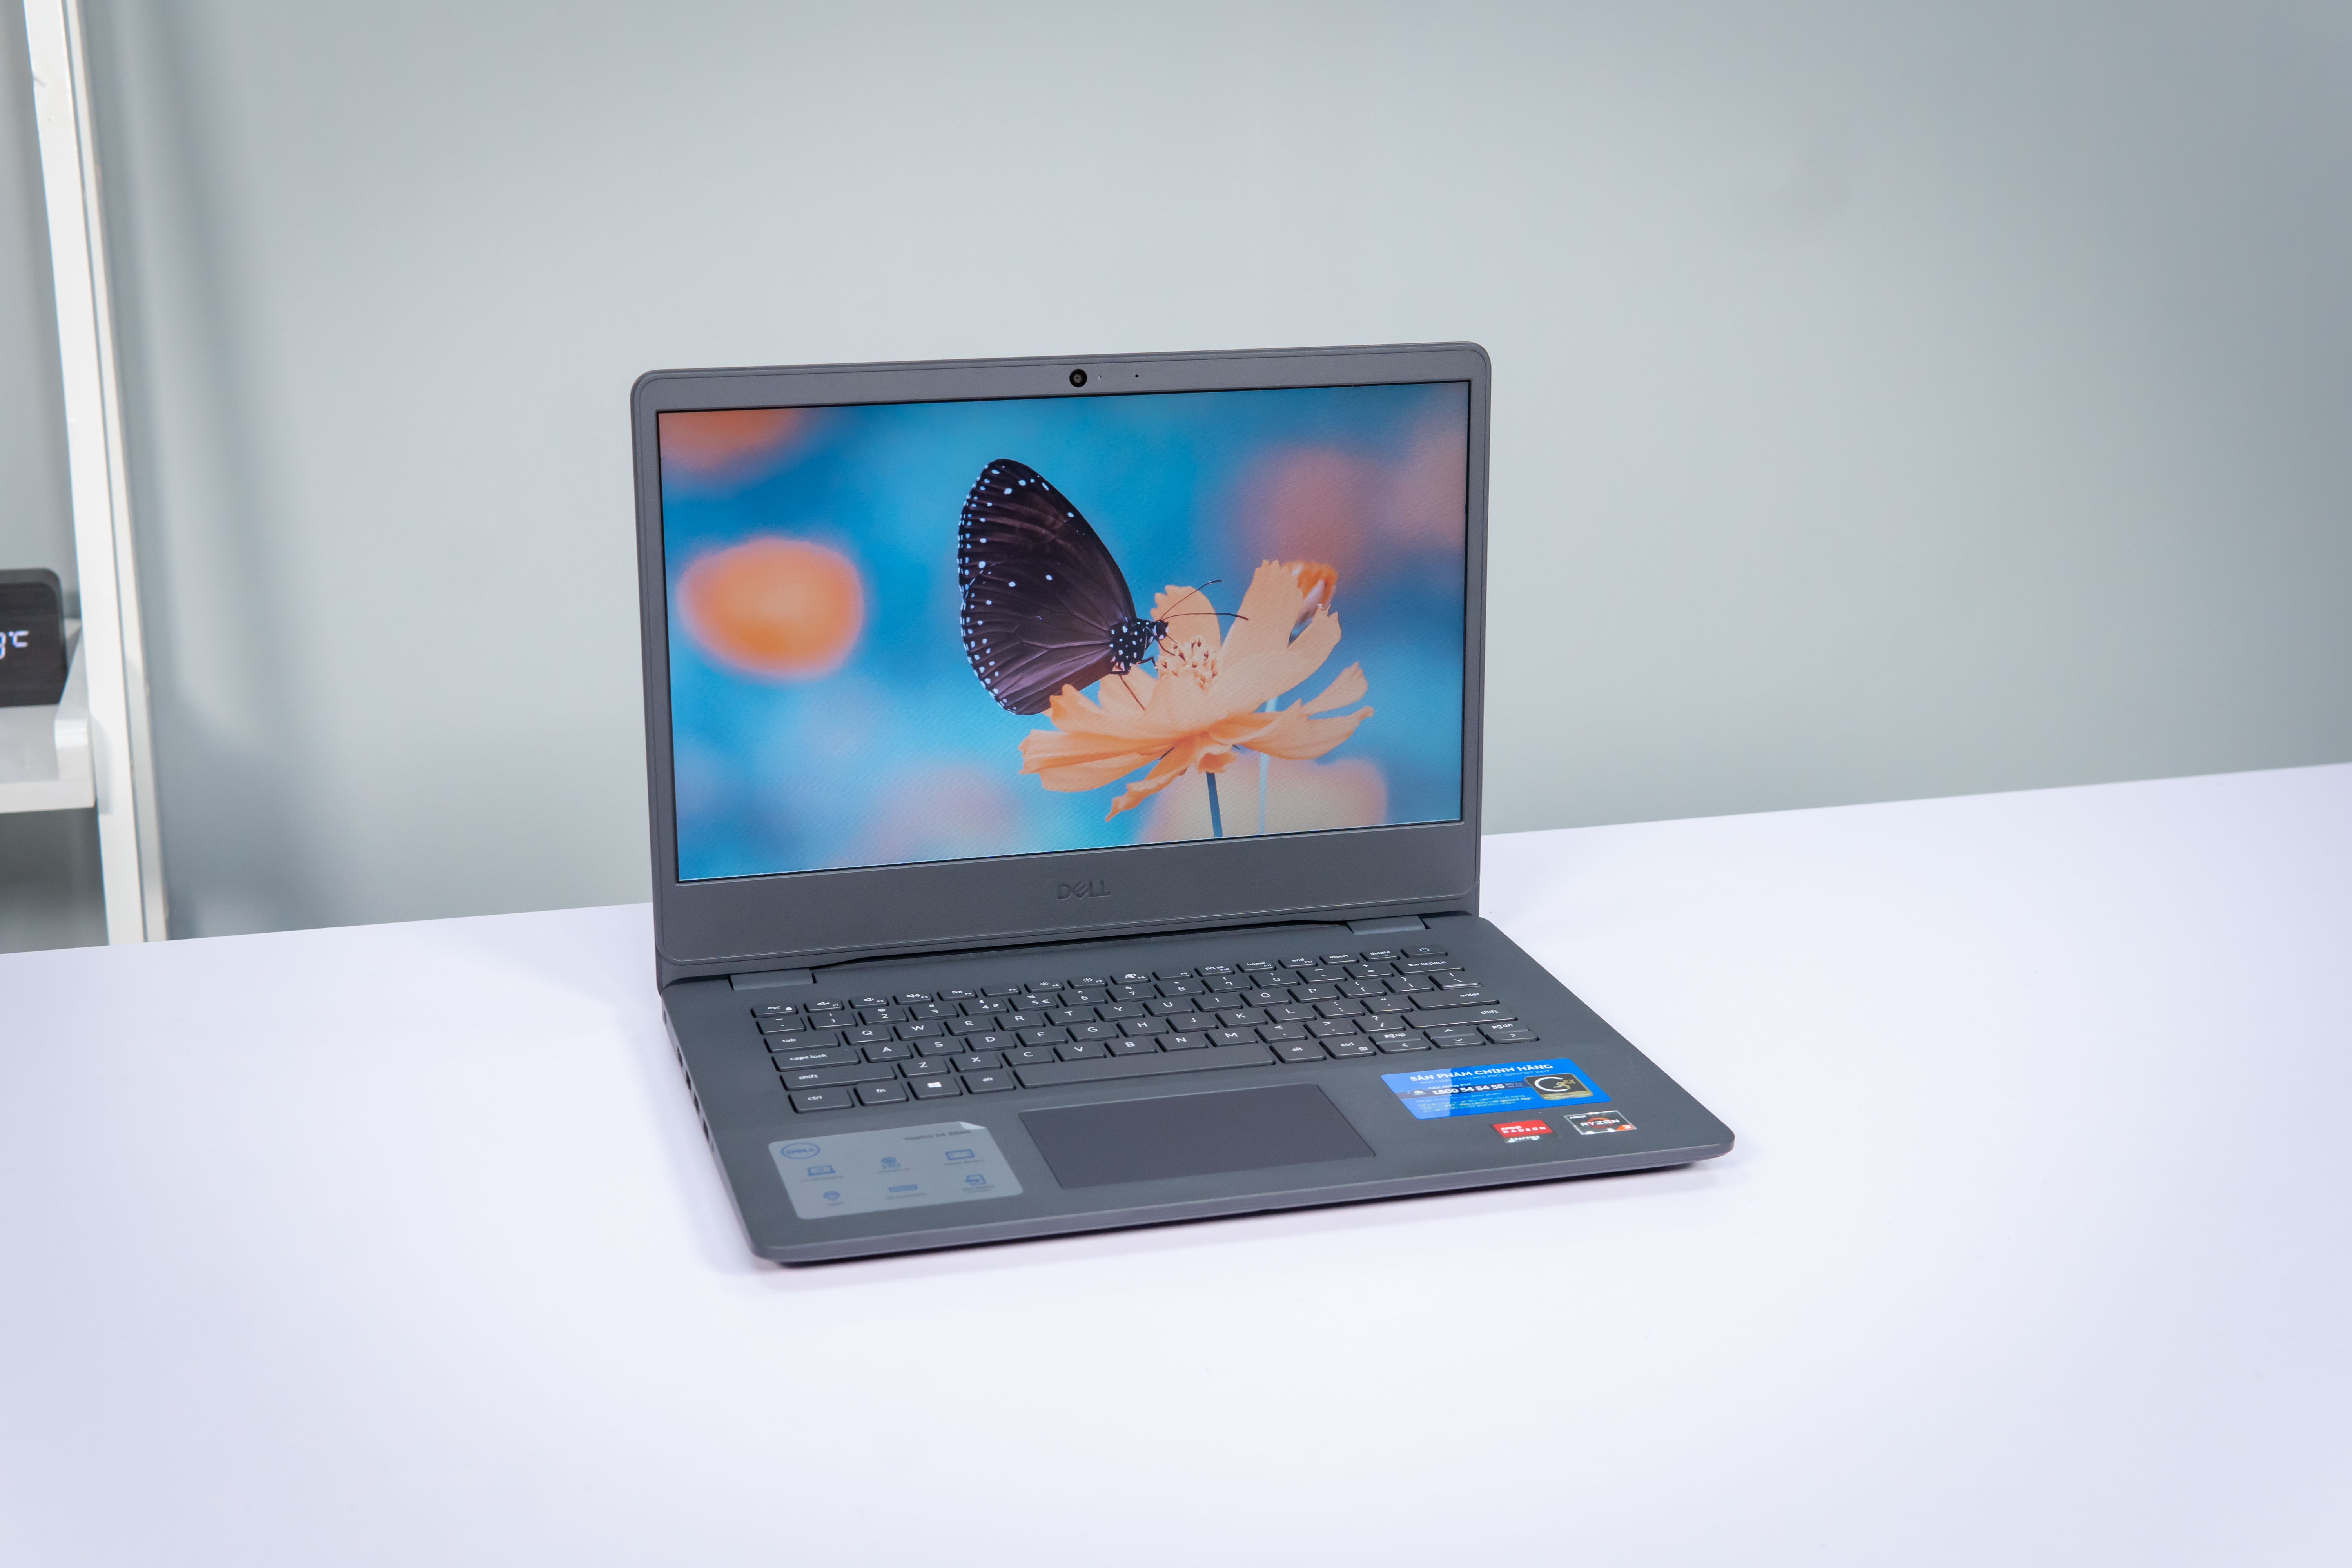 Dell 3405 - Laptop văn phòng giá rẻ nhưng cấu hình không “rẻ”